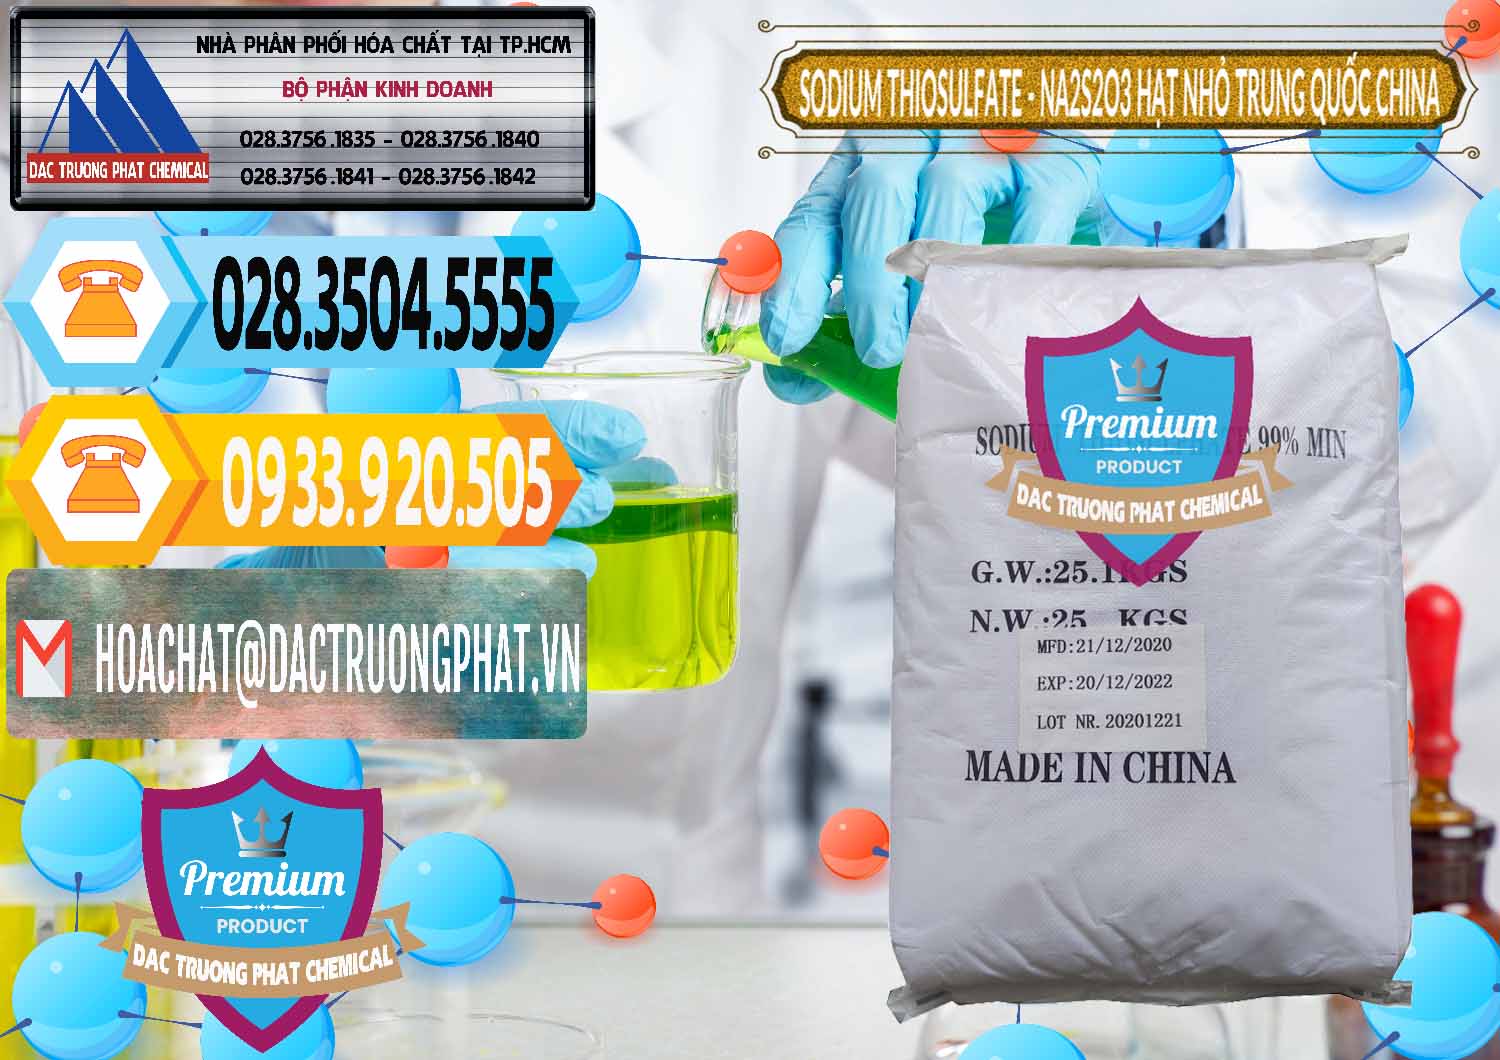 Chuyên bán & cung cấp Sodium Thiosulfate - NA2S2O3 Hạt Nhỏ Trung Quốc China - 0204 - Nhà cung cấp ( phân phối ) hóa chất tại TP.HCM - hoachattayrua.net